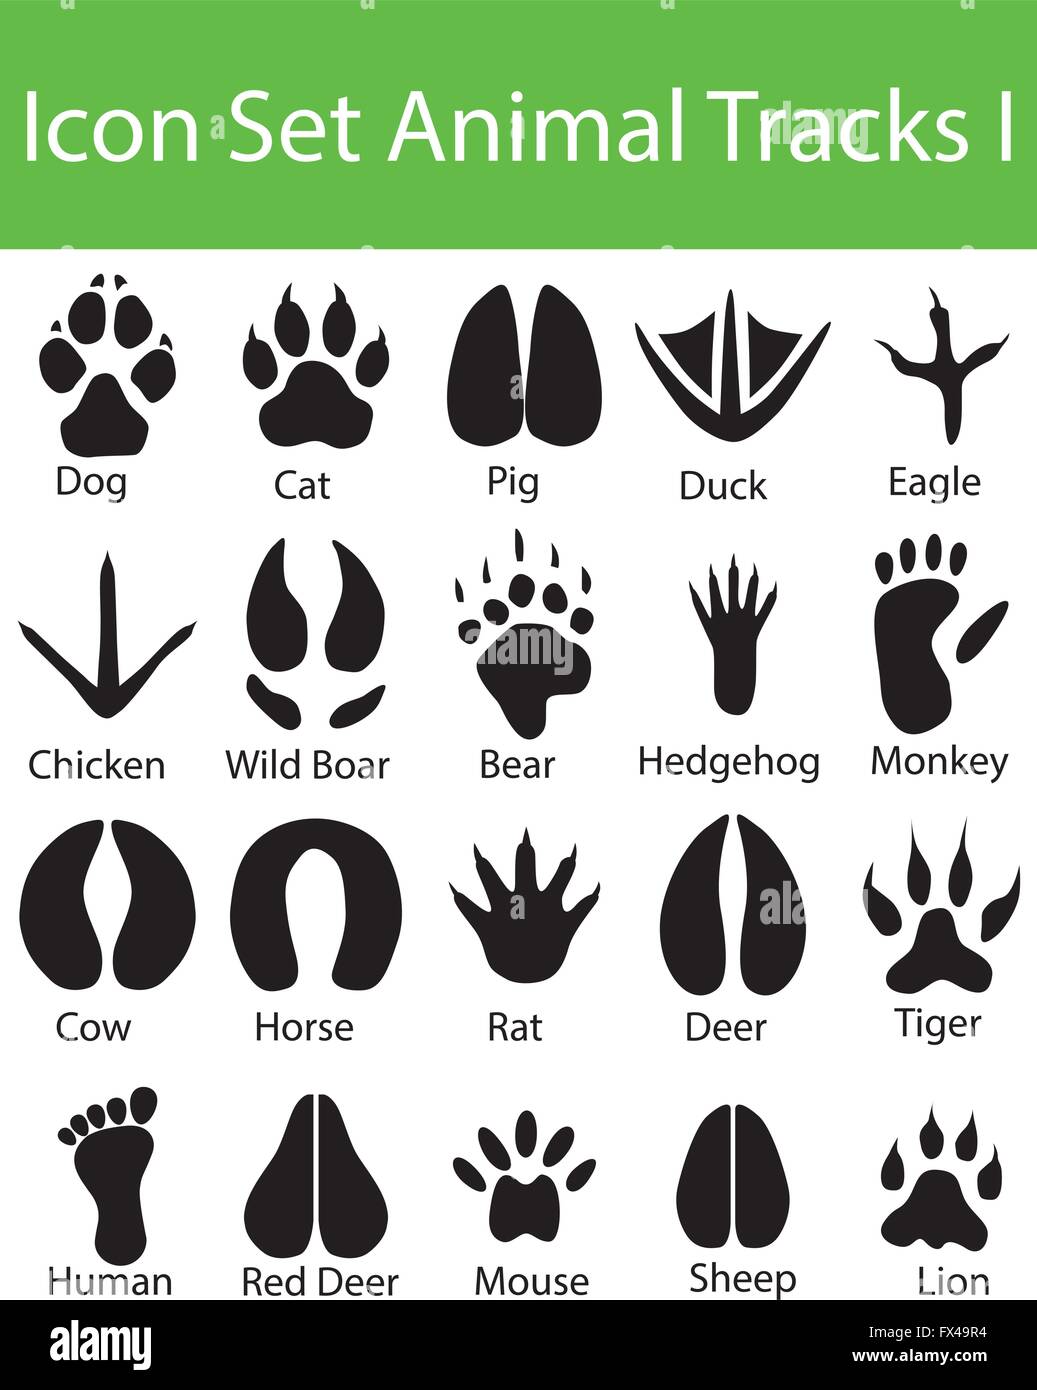 Icon Set Animal Tracks gestalte ich mit 20 Icons für den kreativen Einsatz in Grafik Stock Vektor